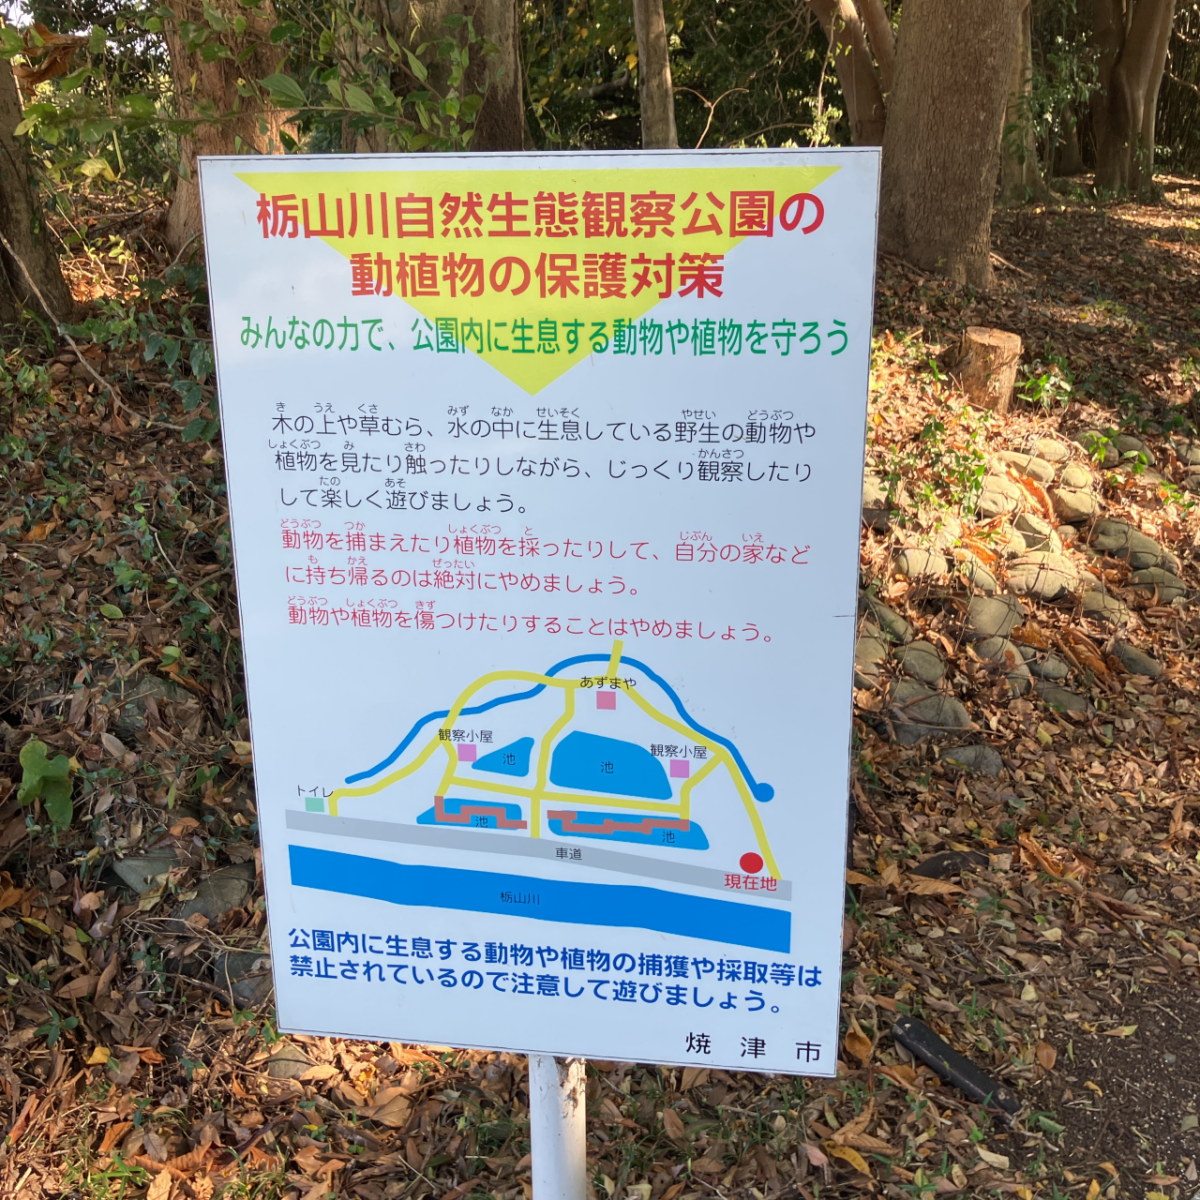 焼津市栃山川公園は捕獲や採取等は禁止